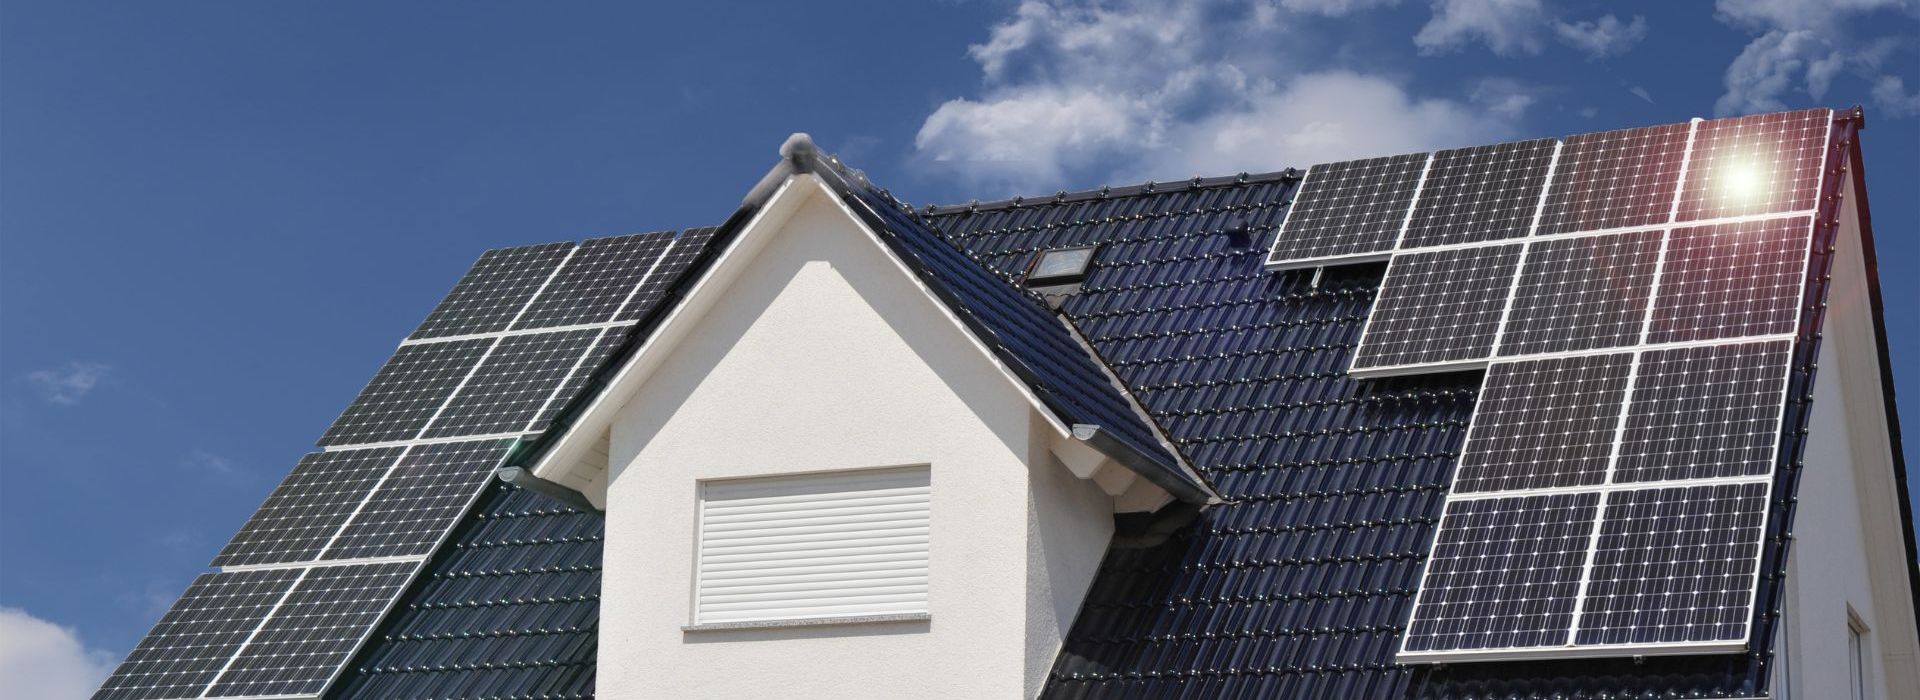 solar panel installer uk